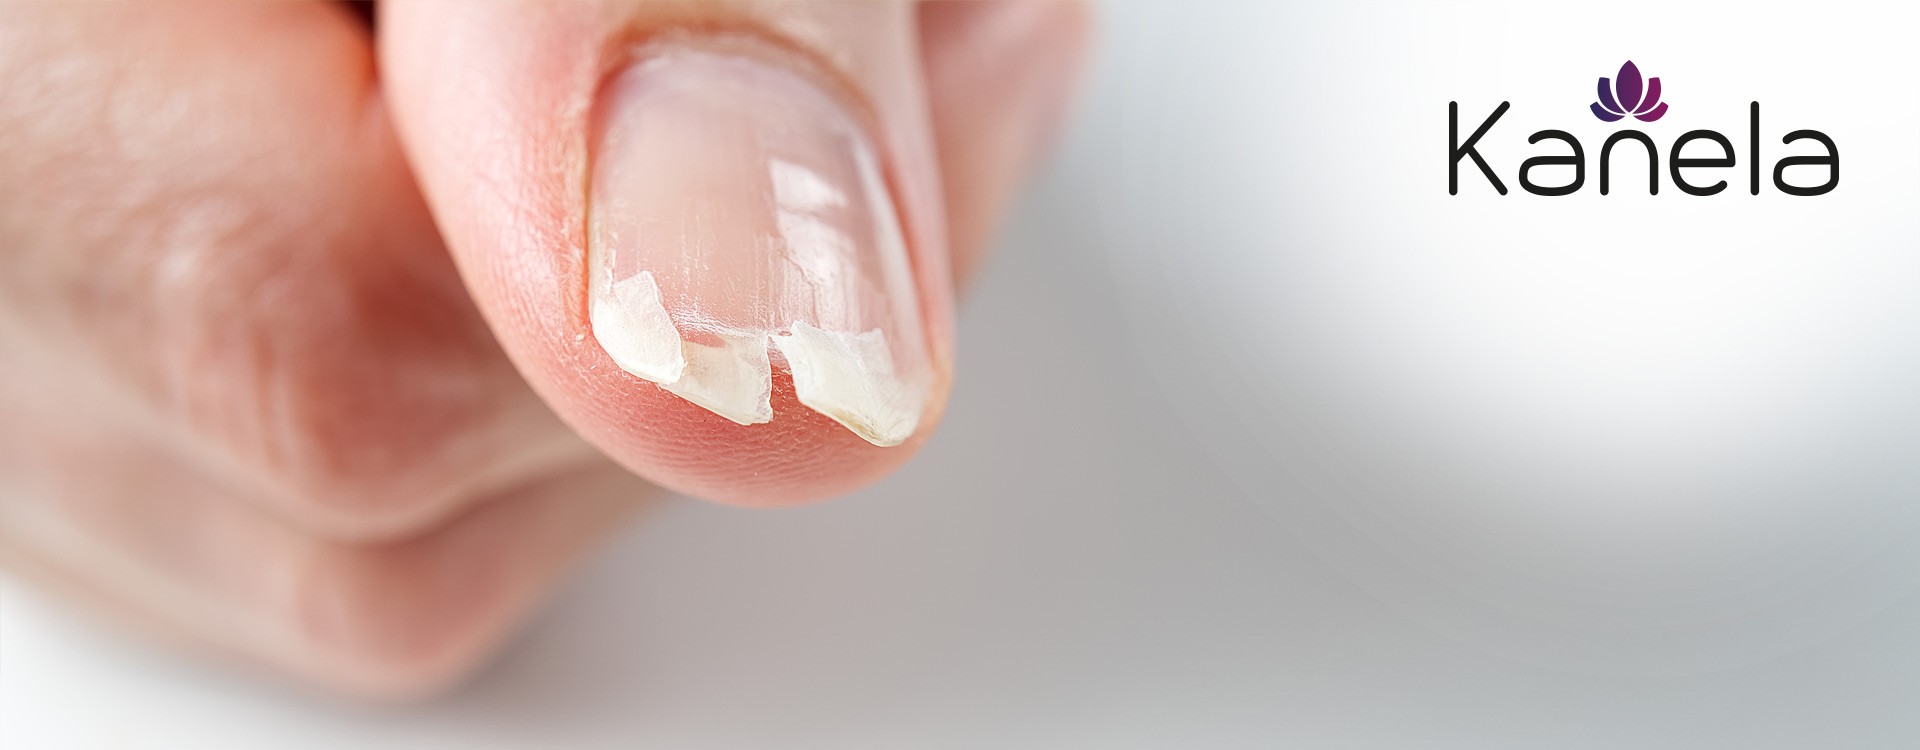 Cosa si può fare contro le unghie fragili?